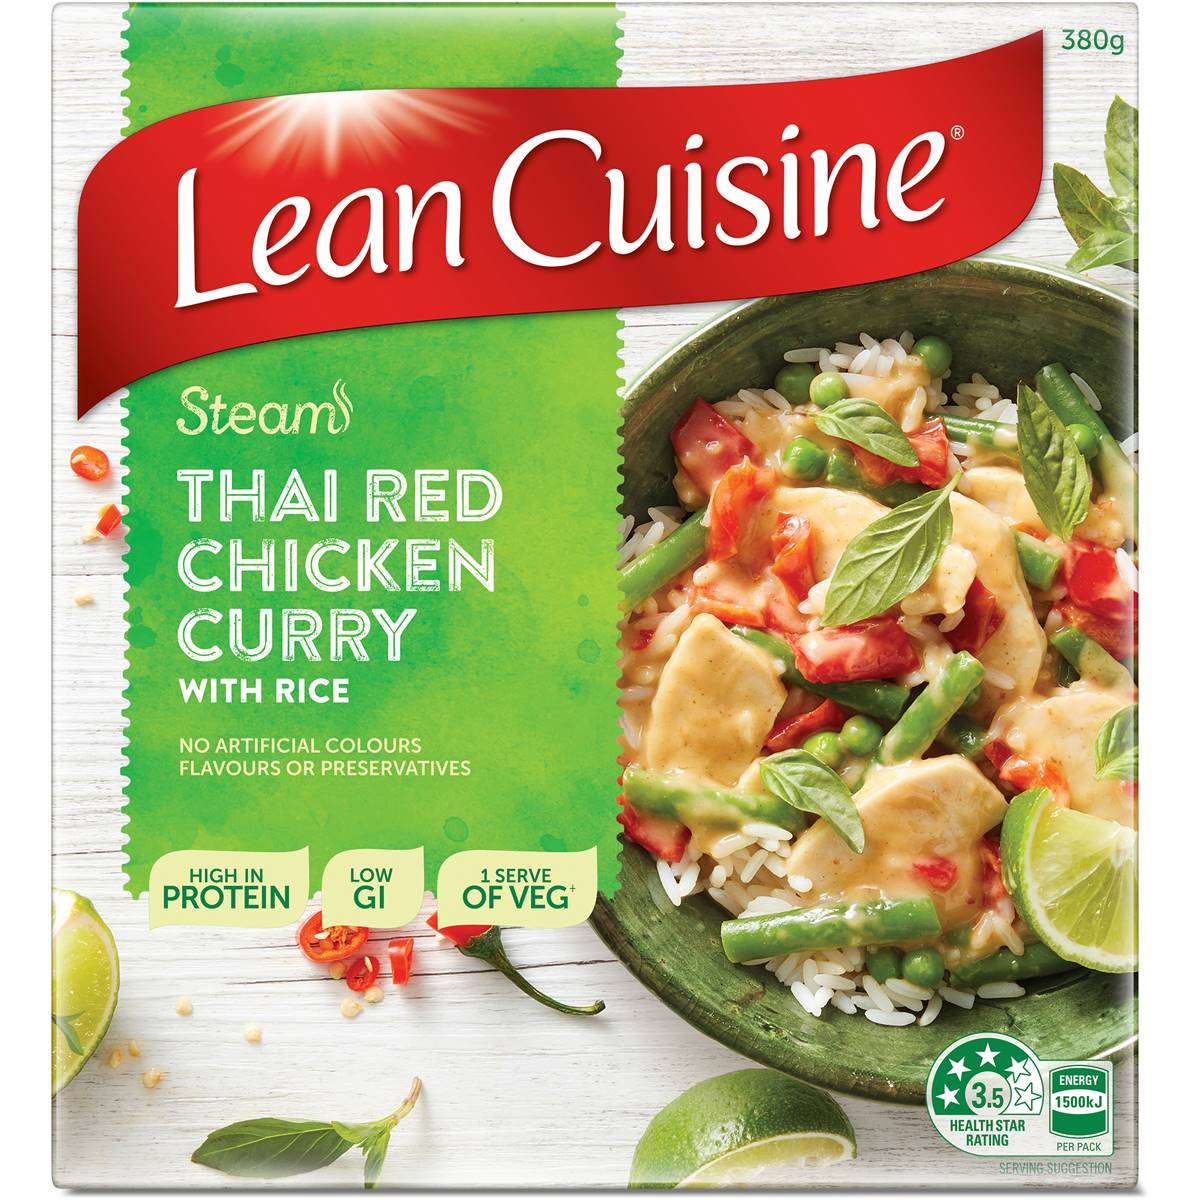 Calories in Lean Cuisine Steam Thai Chicken Thai Chicken